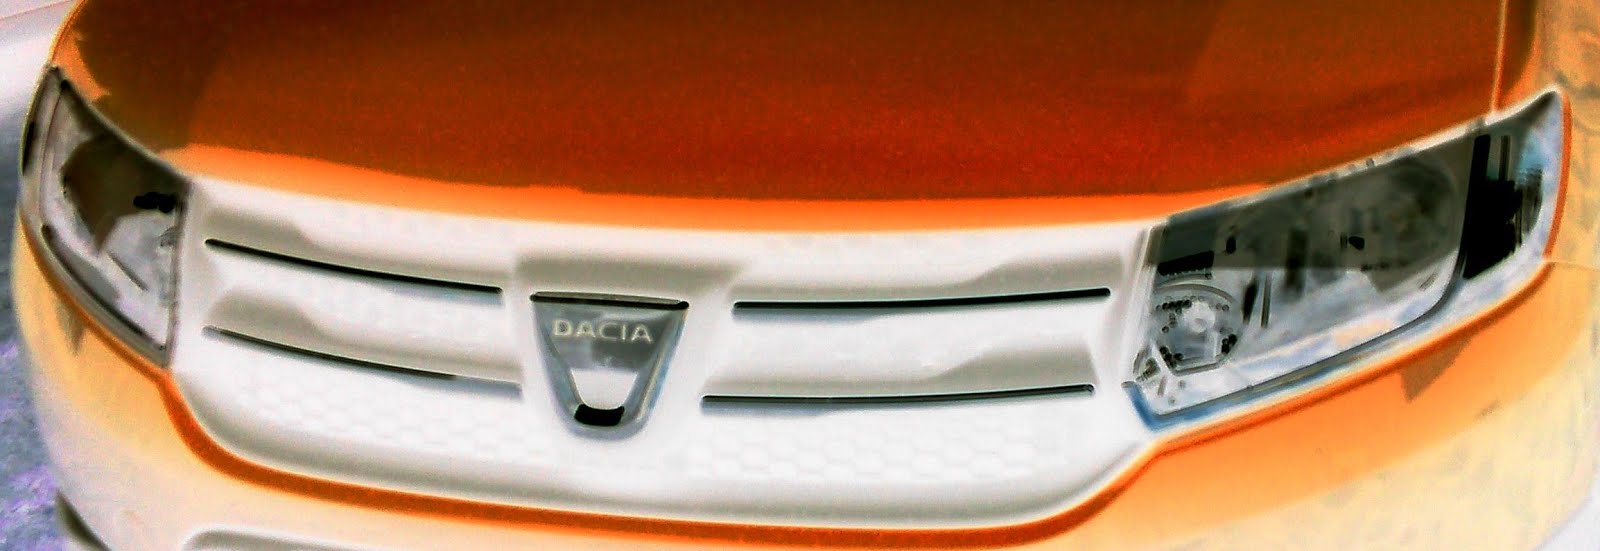 Le sourire narquois de la Dacia